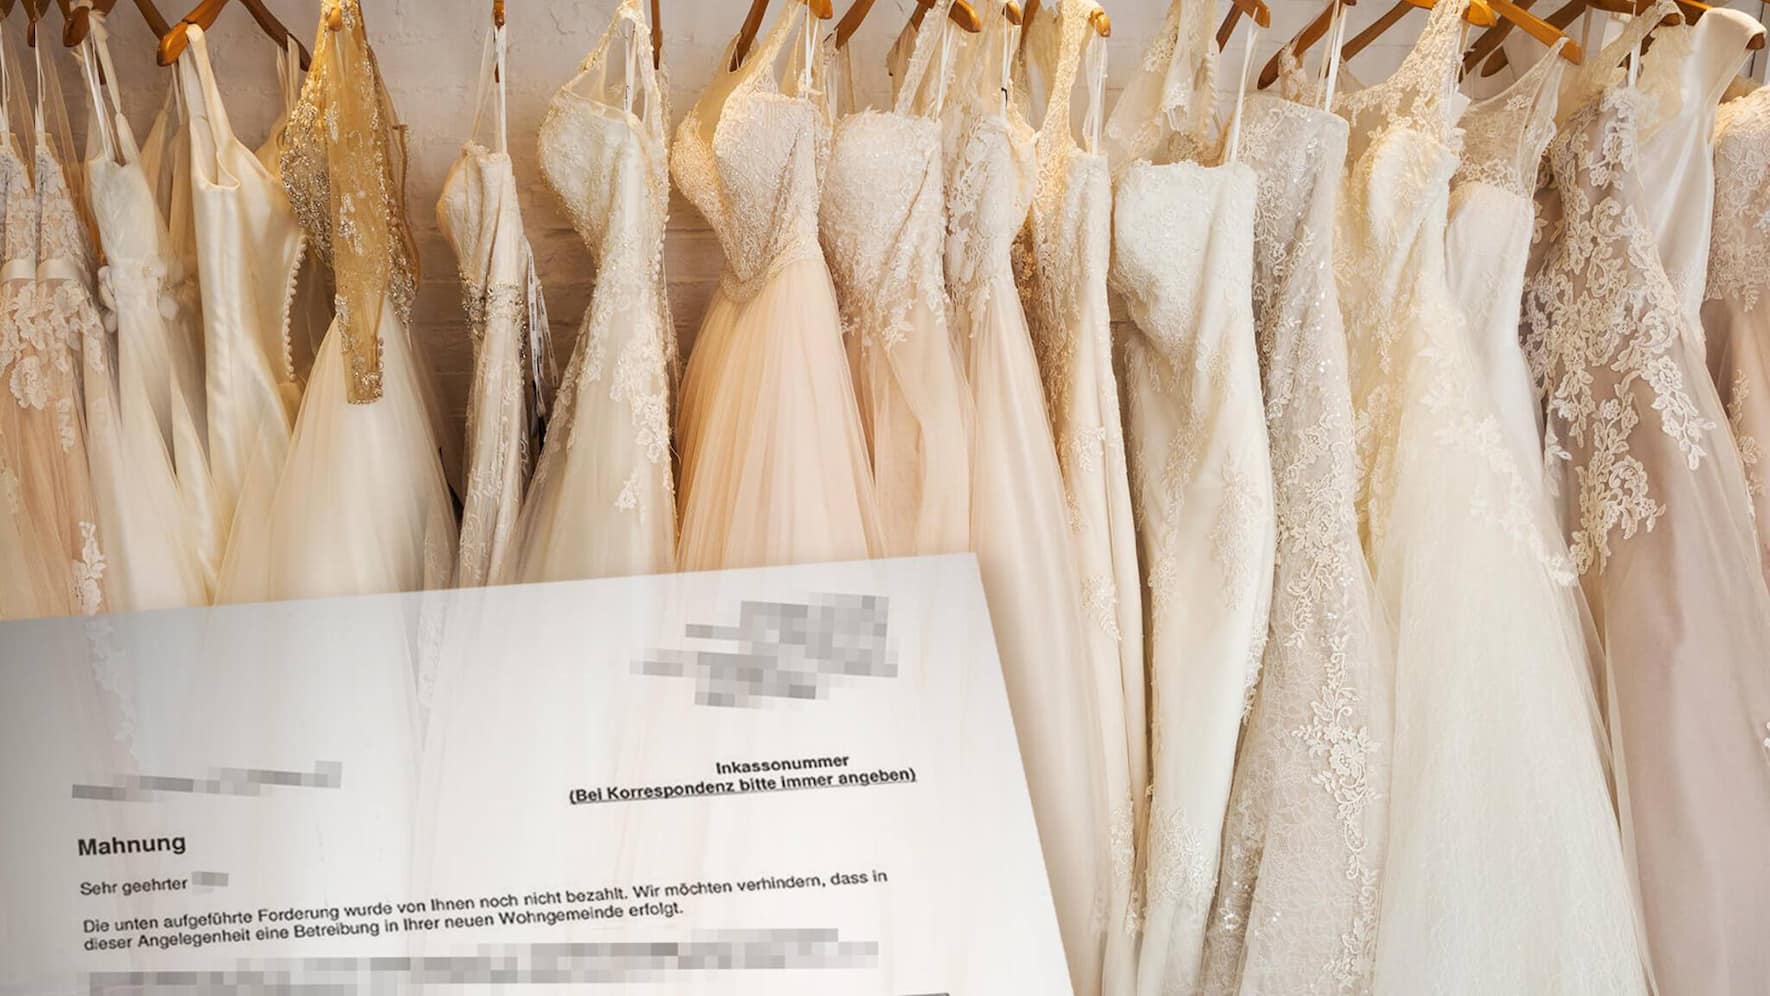 Intrum Eine Betreibung Für 27 Brautkleider Beobachter